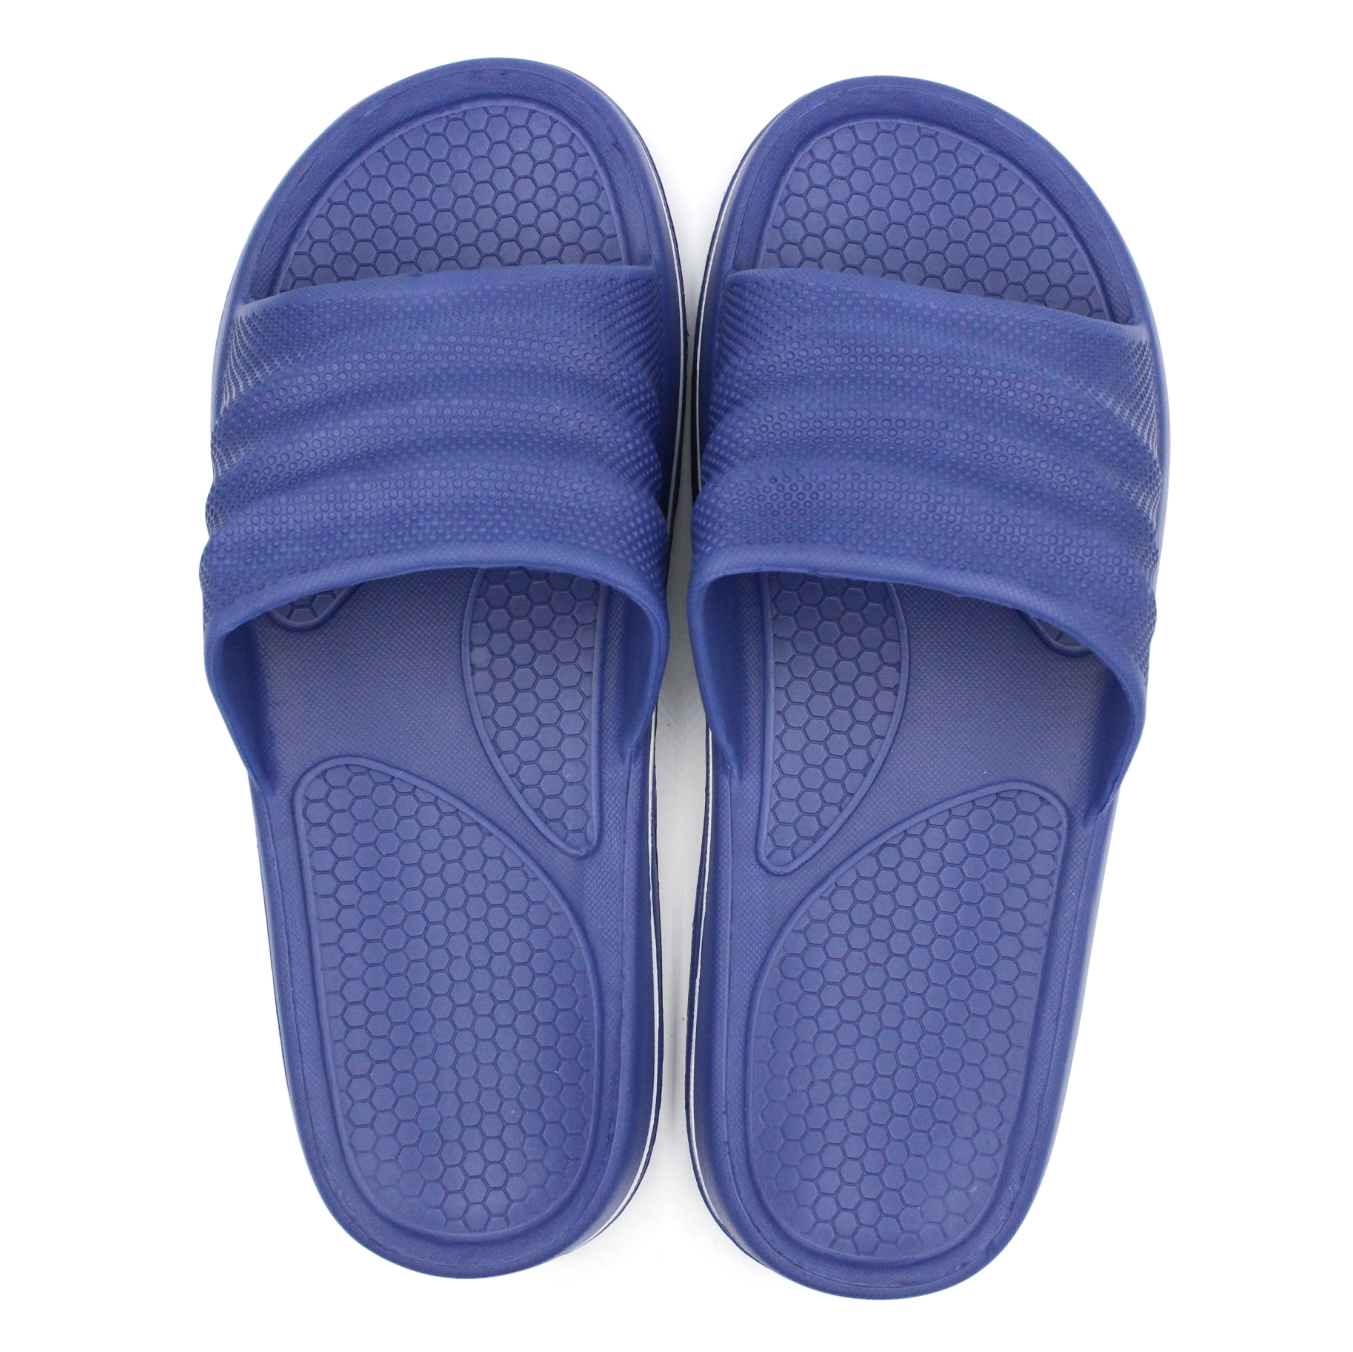 Men's Sports Slides Shower Beach Sandals Recovery Slip On | eBay